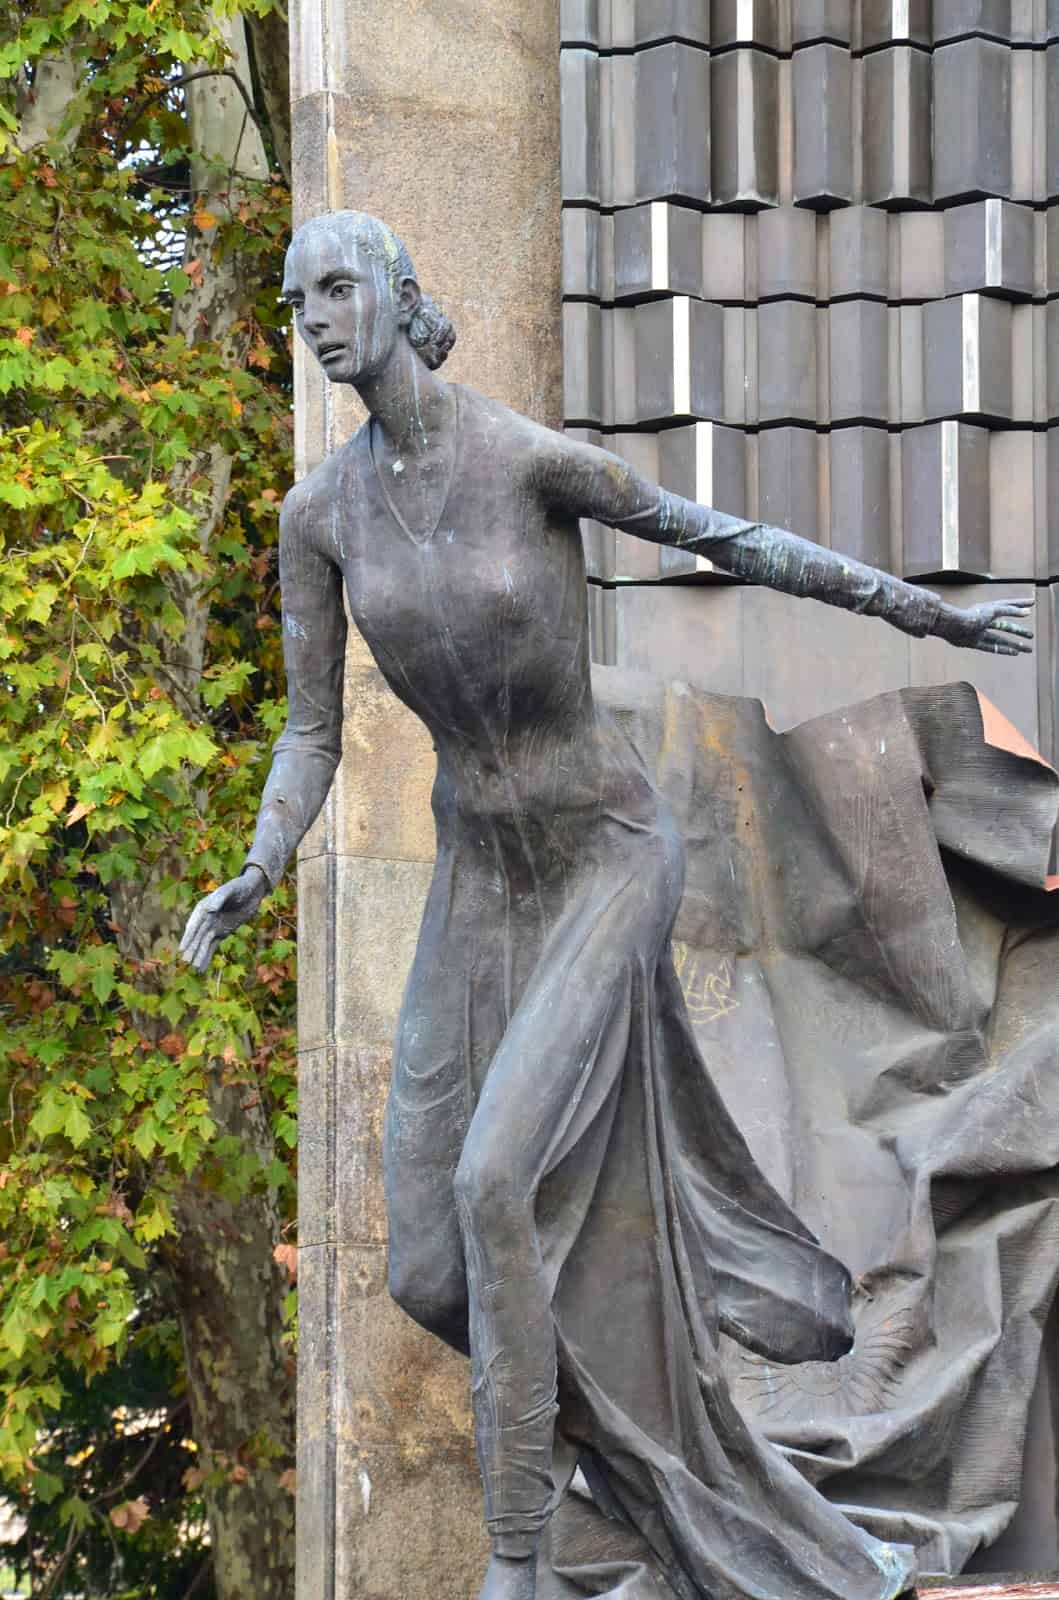 Monument to Evita Perón in Plaza Evita